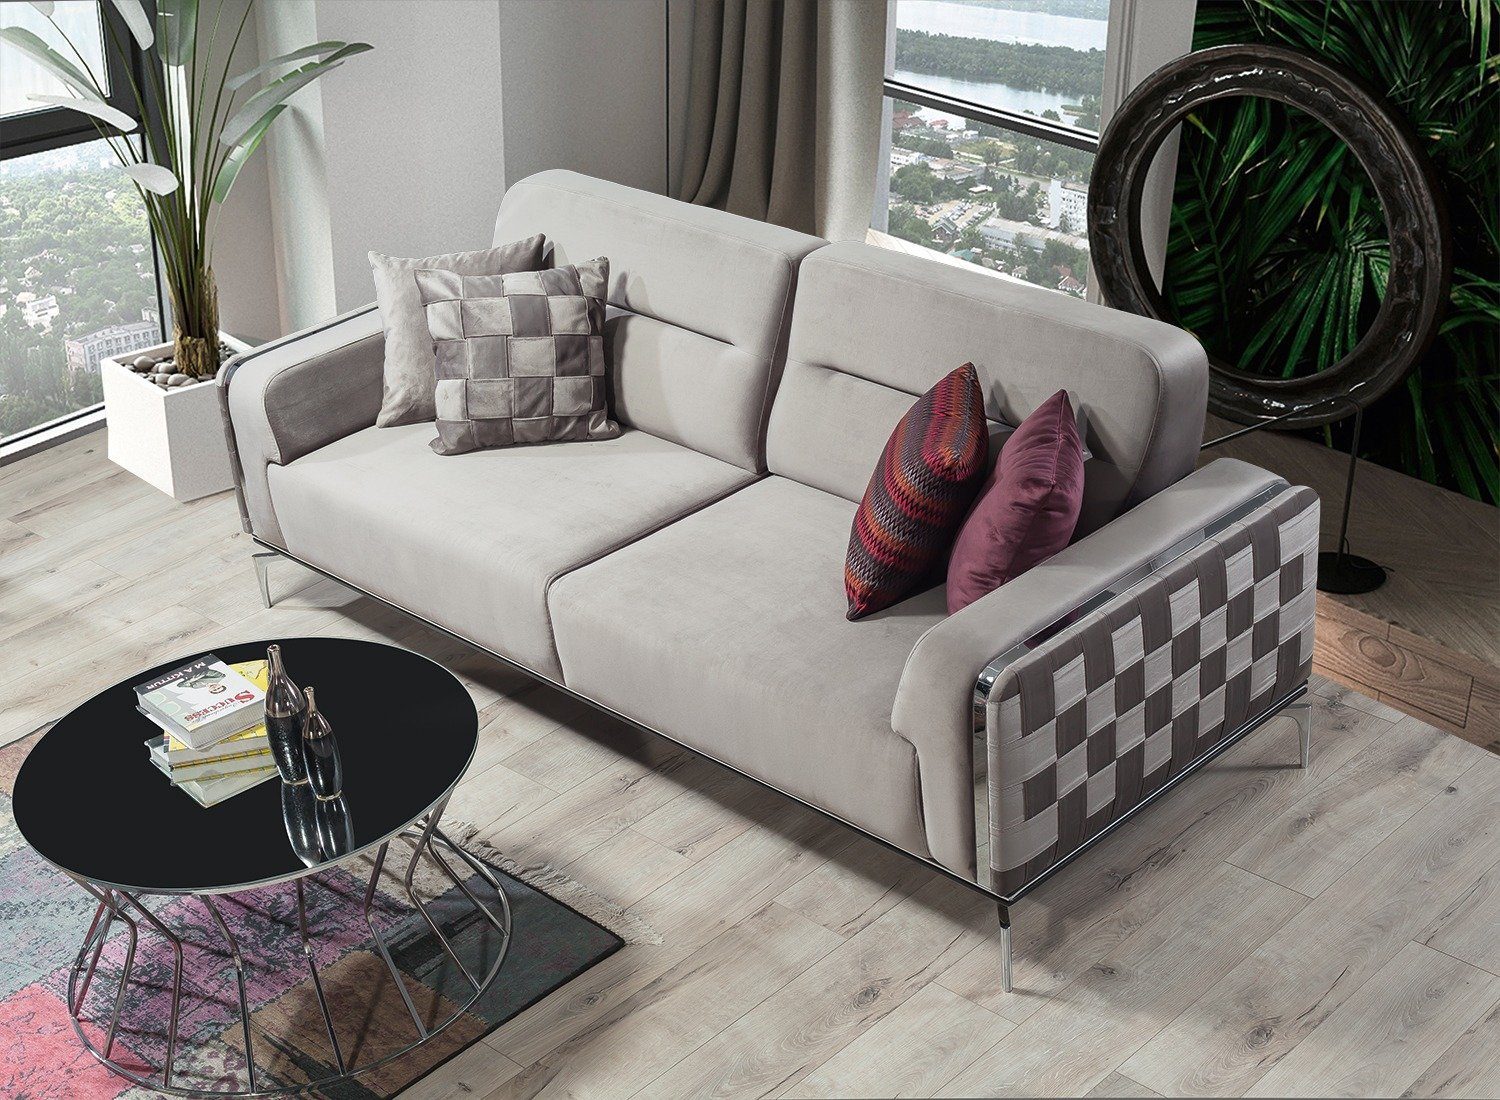 Villa Möbel Sofa Check, 1 Stk. 2-Sitzer, Quality Made in Turkey, pflegeleichter Mikrofaserstoff, Metallfüße Grau